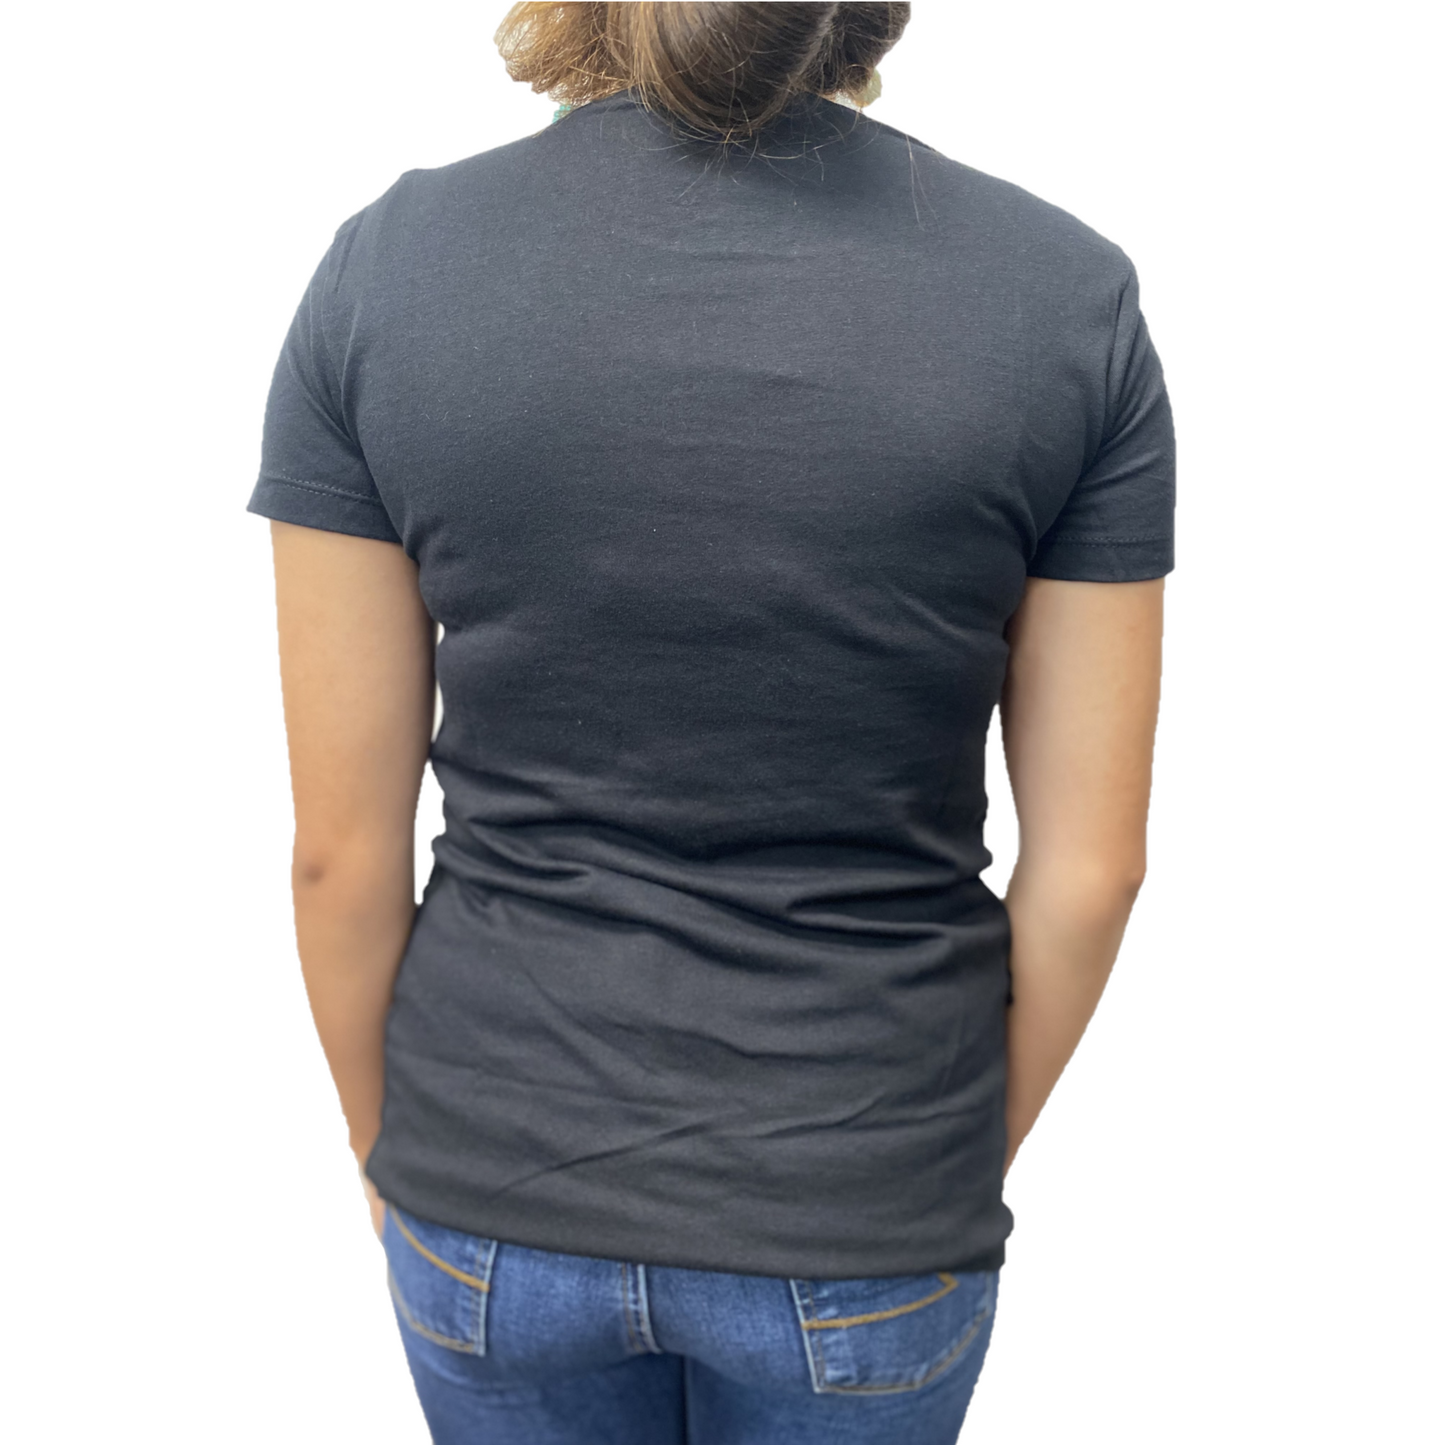 Kimes Ranch® Ladies Monterey El Paso Black Graphic T-Shirt MONT-BLK